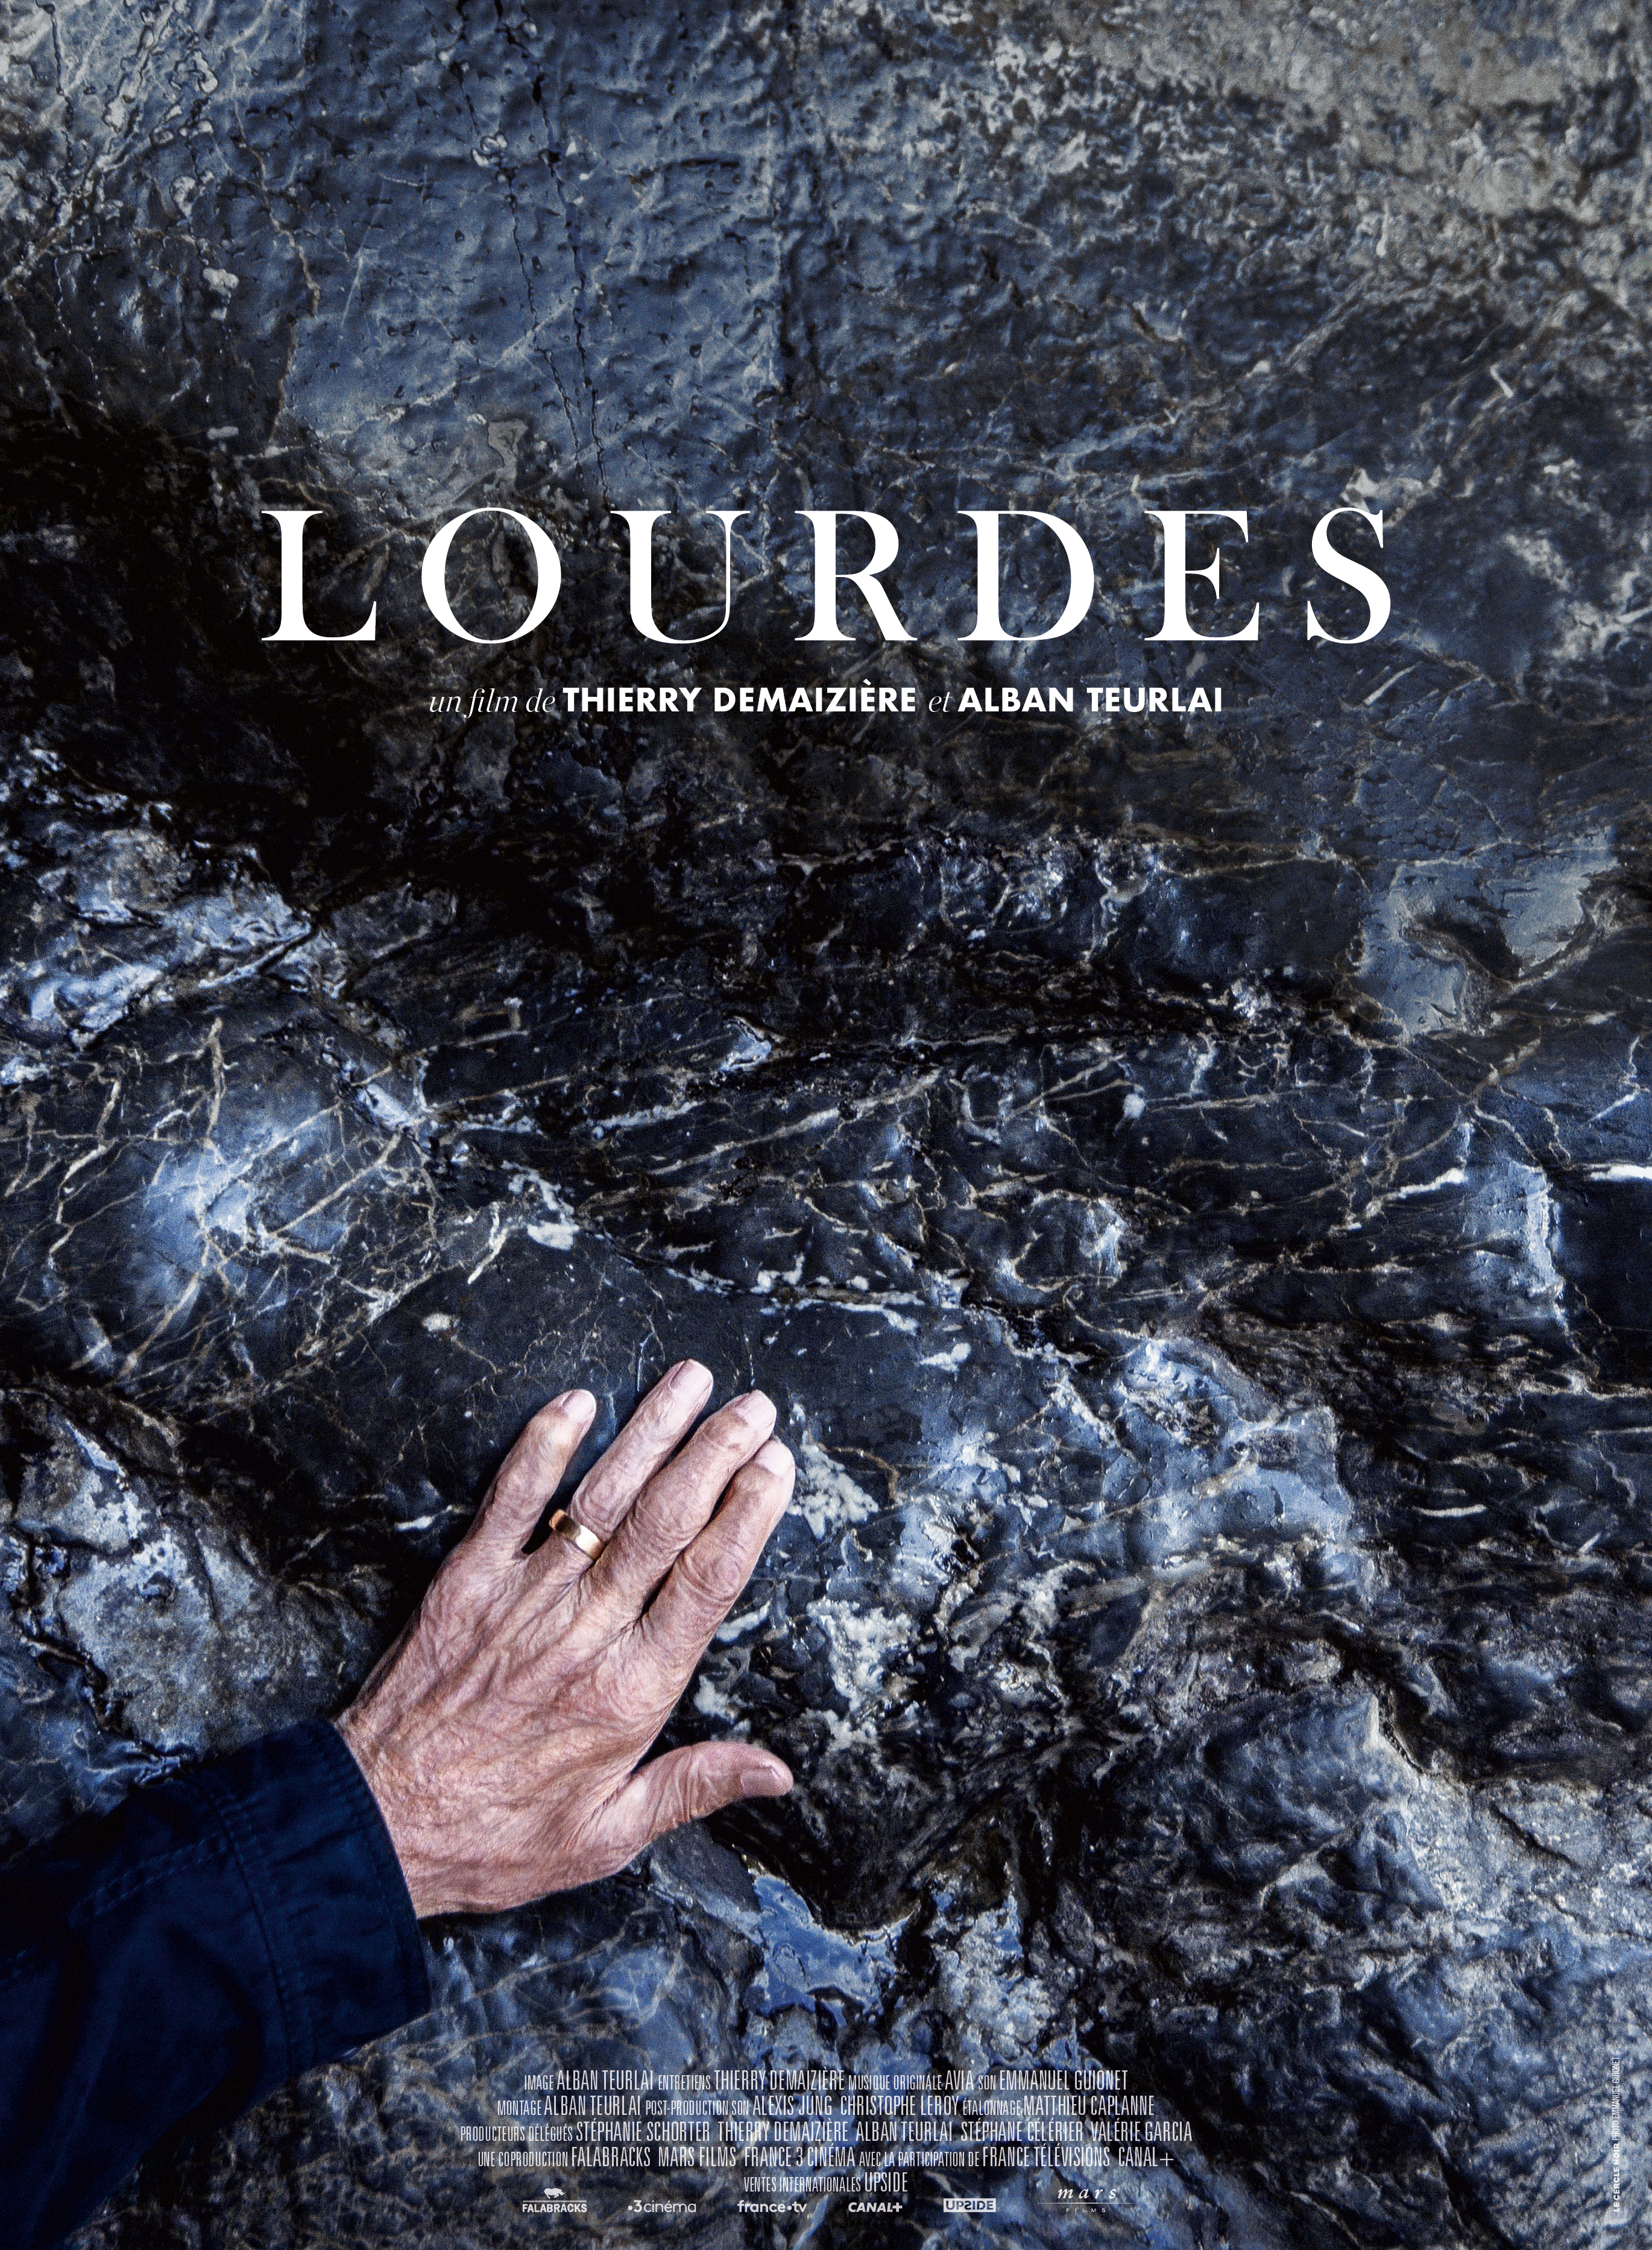 Film documentaire Lourdes, 2019